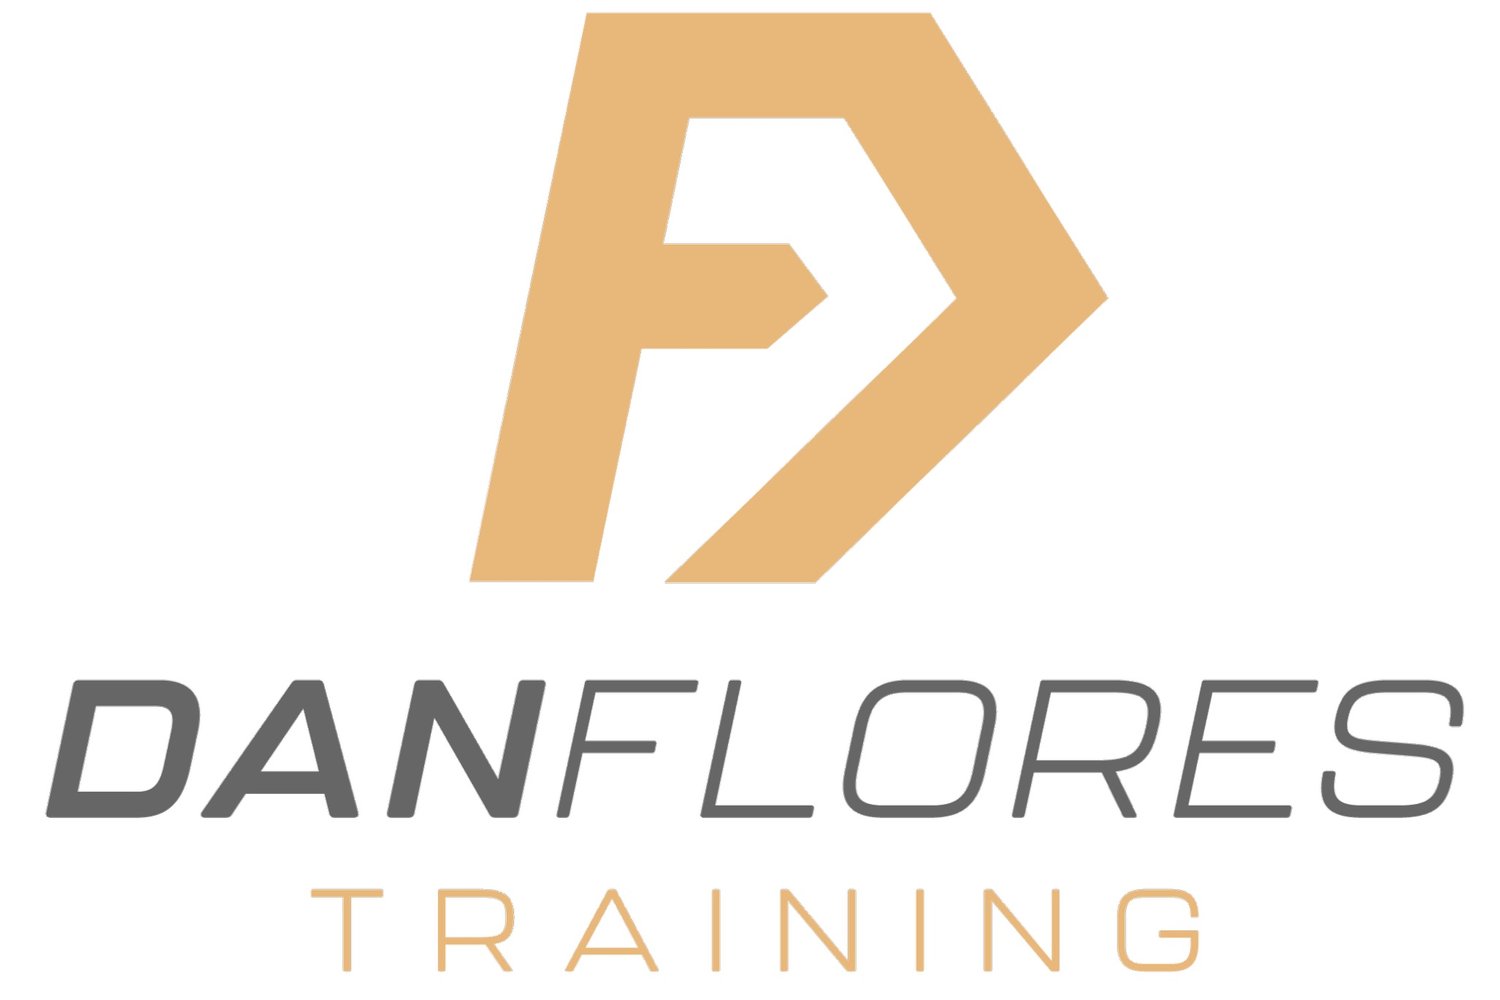 Dan Flores Training